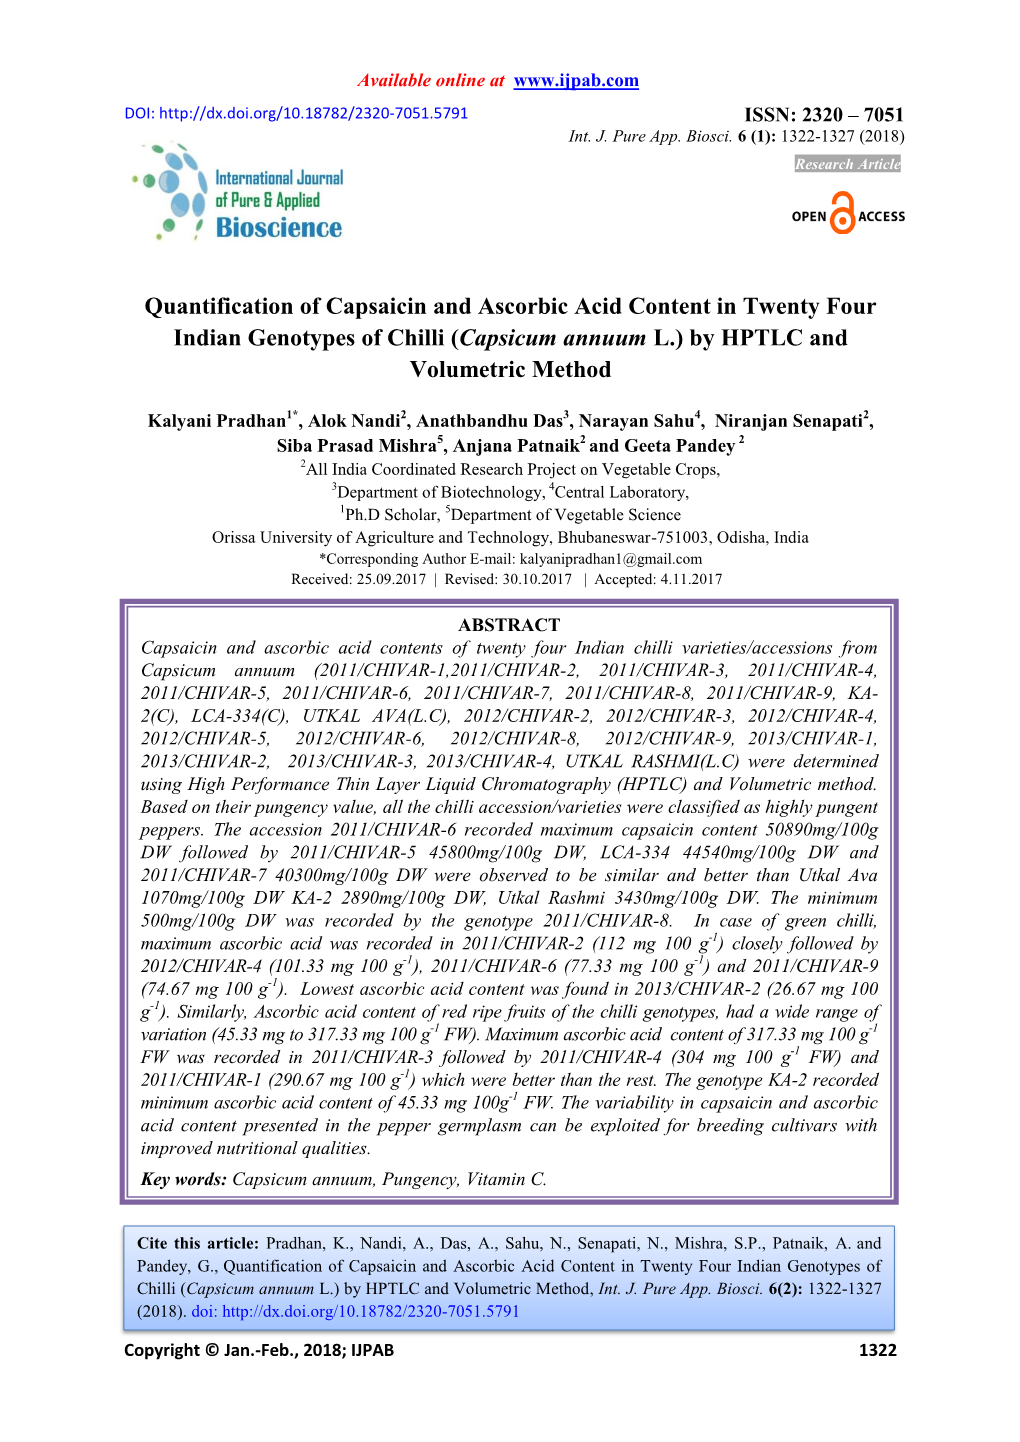 Quantification of Capsaicin and Ascorbic Acid Content in Twenty Four Indian Genotypes of Chilli (Capsicum Annuum L.) by HPTLC and Volumetric Method